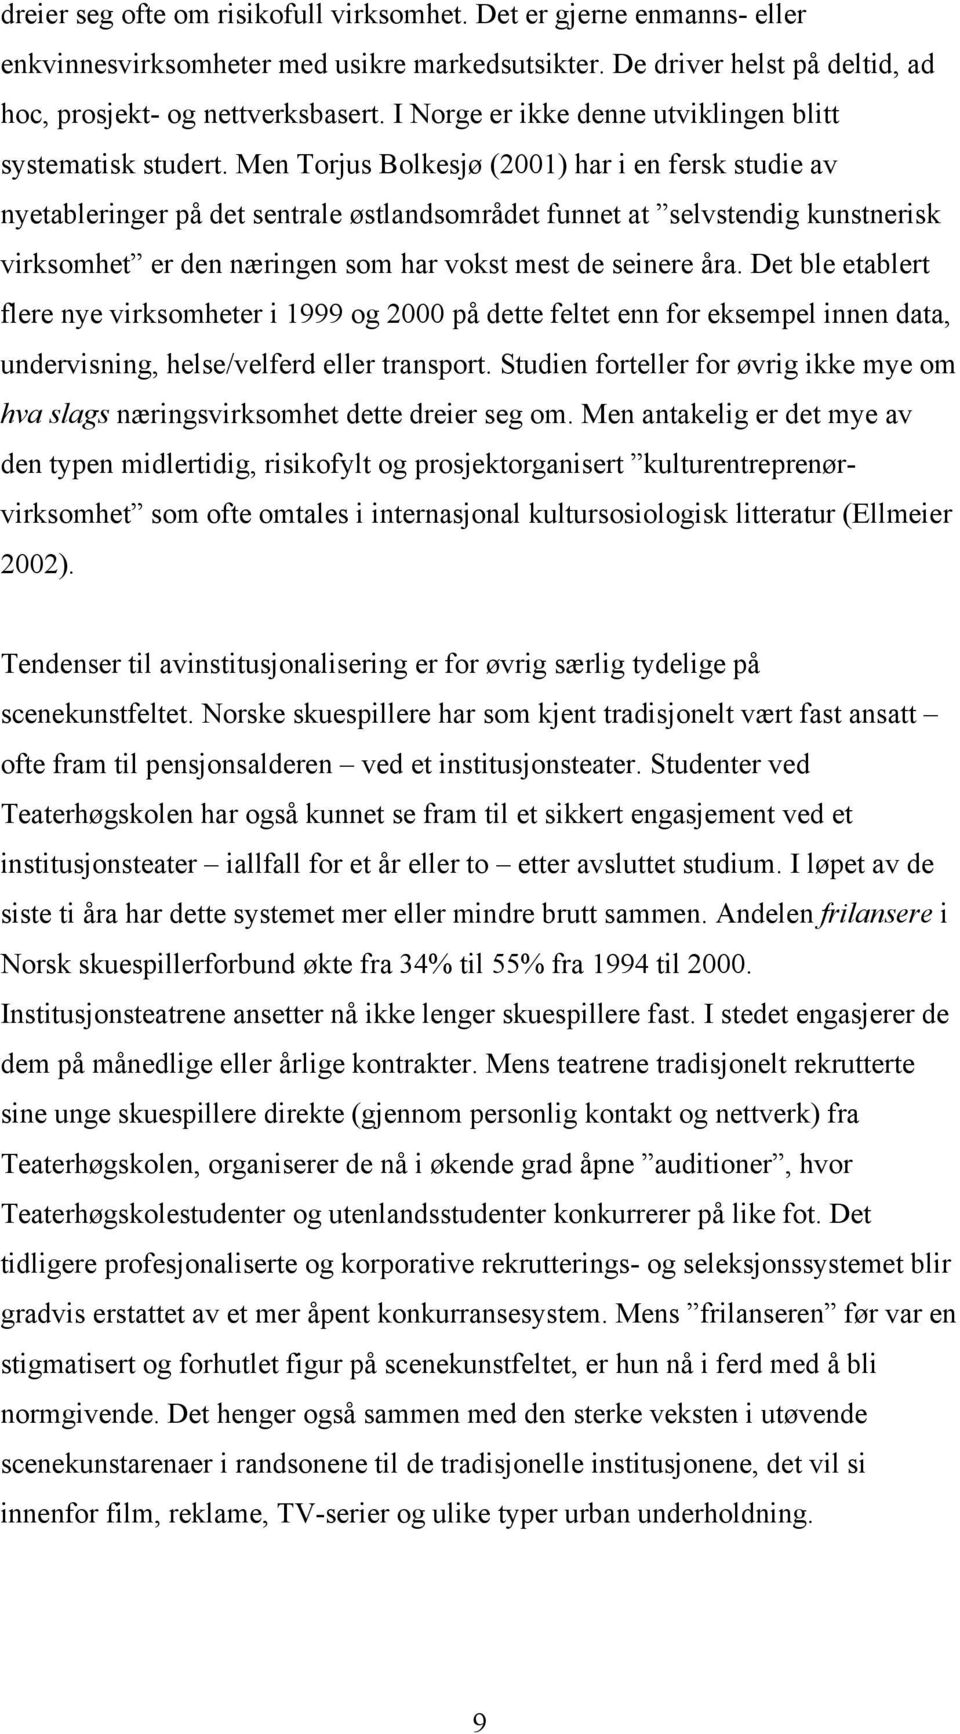 Men Torjus Bolkesjø (2001) har i en fersk studie av nyetableringer på det sentrale østlandsområdet funnet at selvstendig kunstnerisk virksomhet er den næringen som har vokst mest de seinere åra.